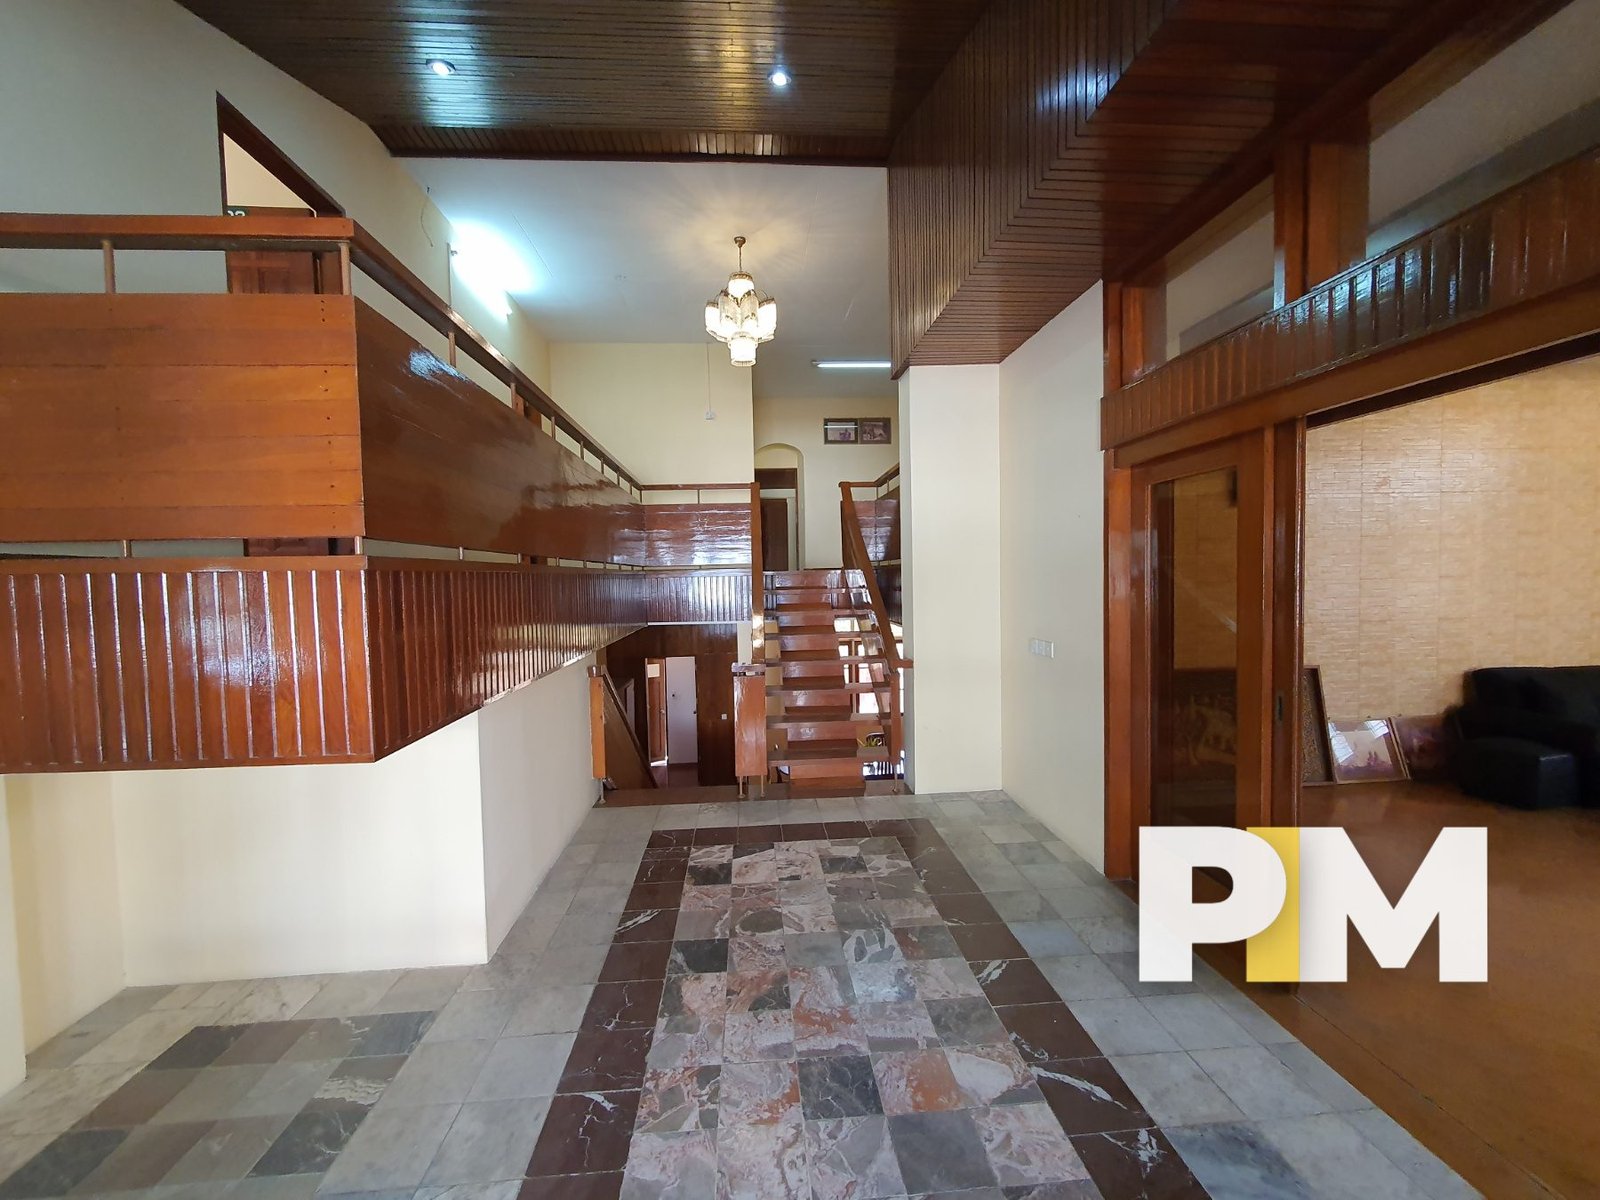 Entrance view - Myanmar Real Estate